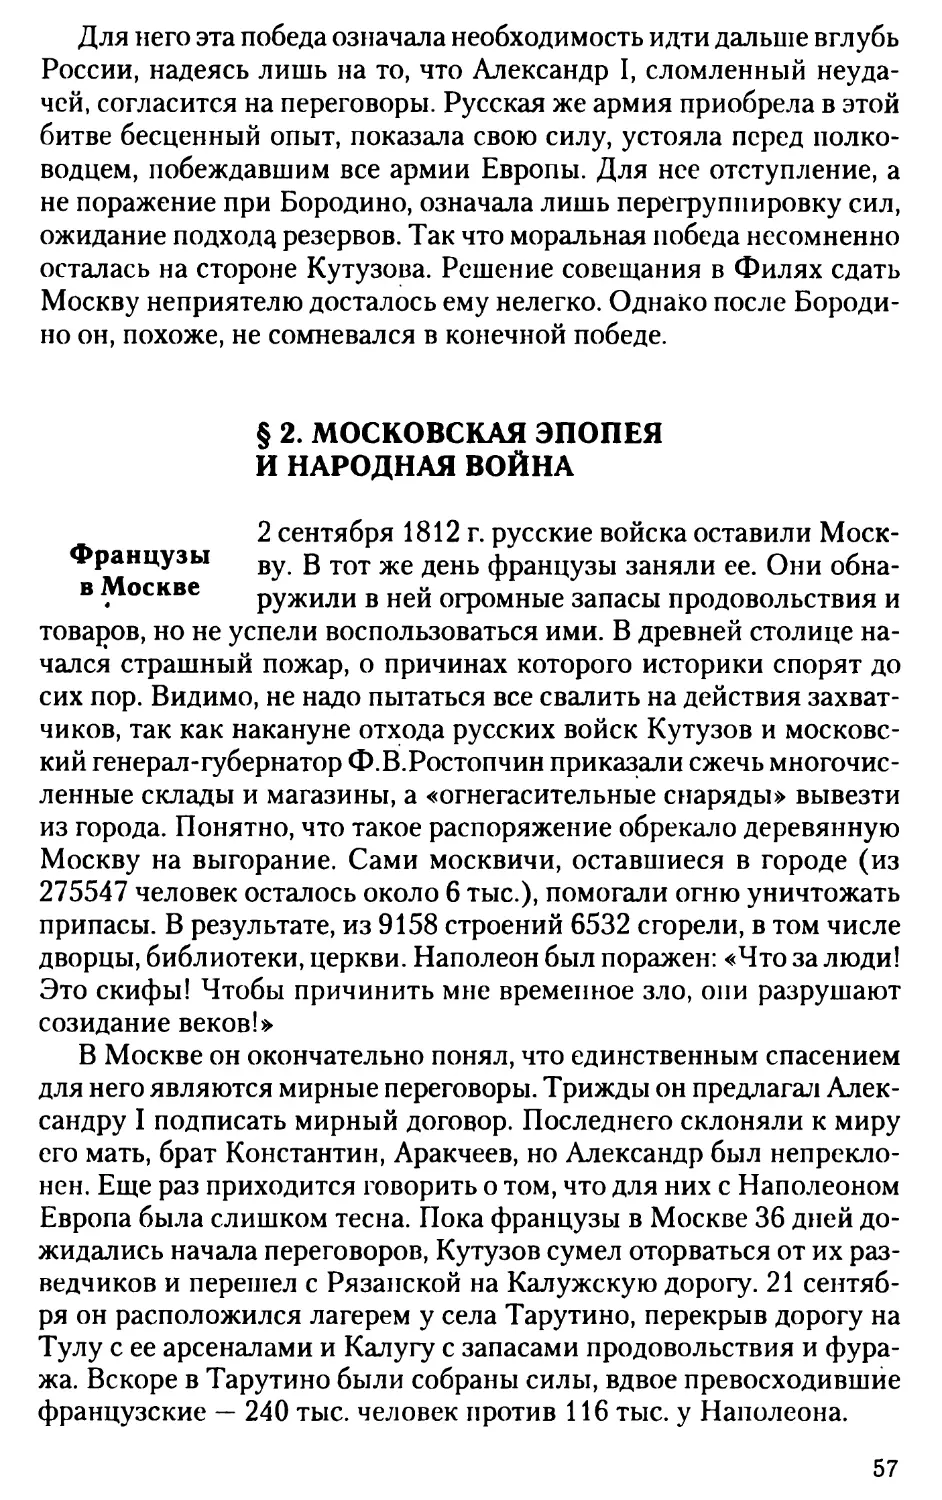 § 2. Московская эпопея и народная война